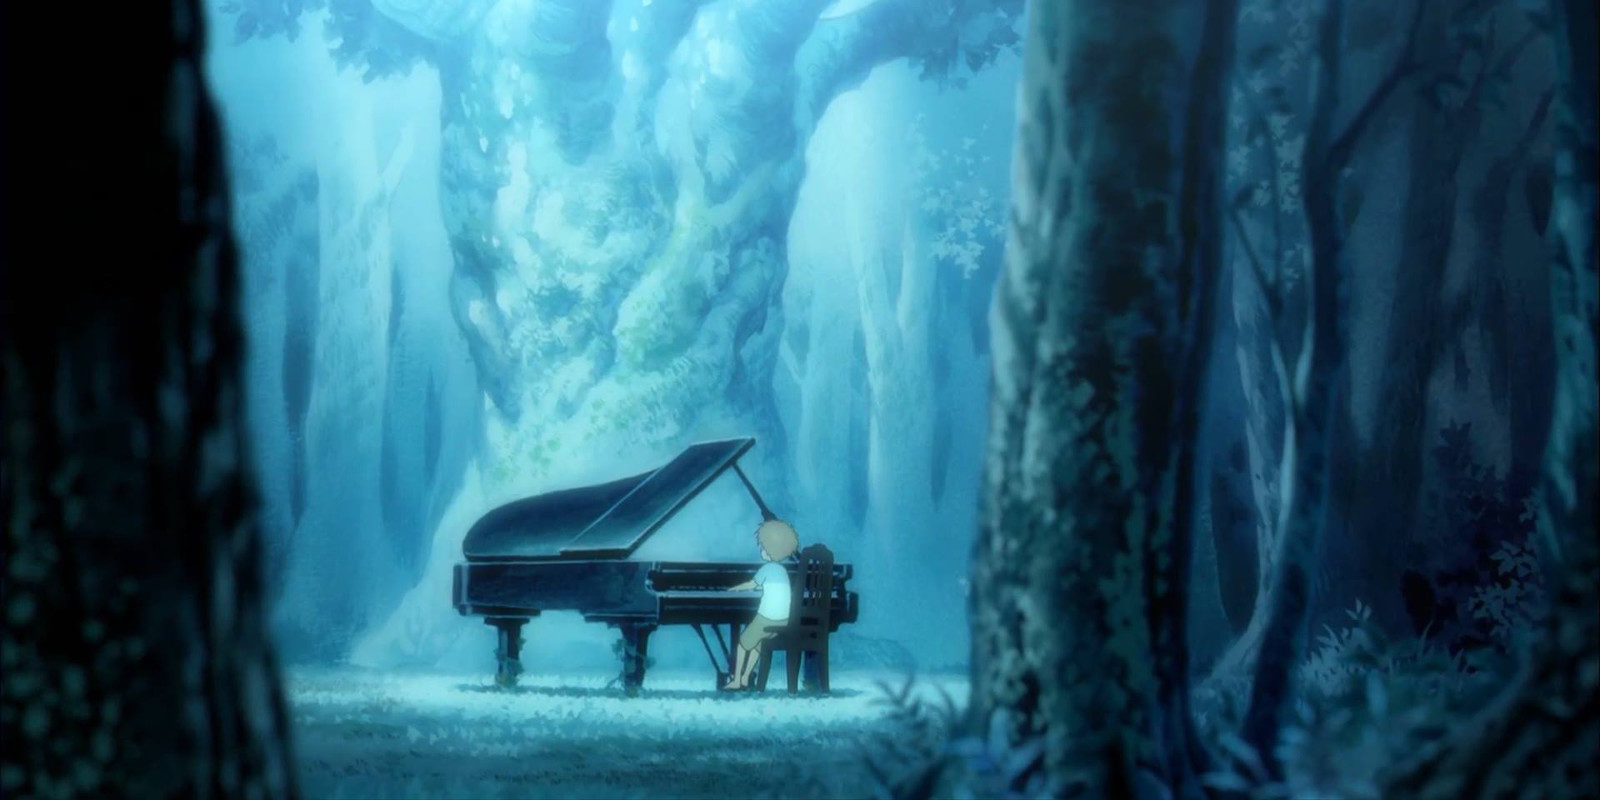 El anime 'Piano no Mori' revela su equipo técnico y reparto protagonista